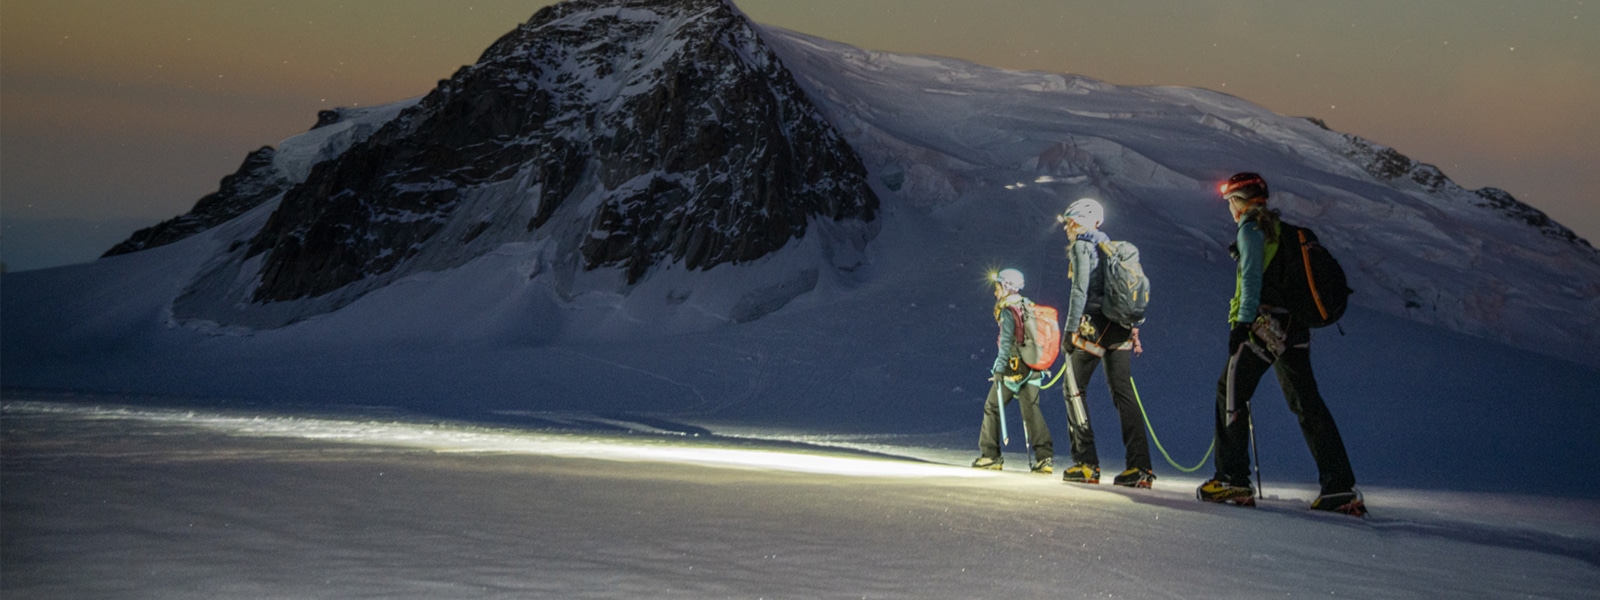 Tre escursionisti che percorrono una montagna innevata sotto un cielo stellato